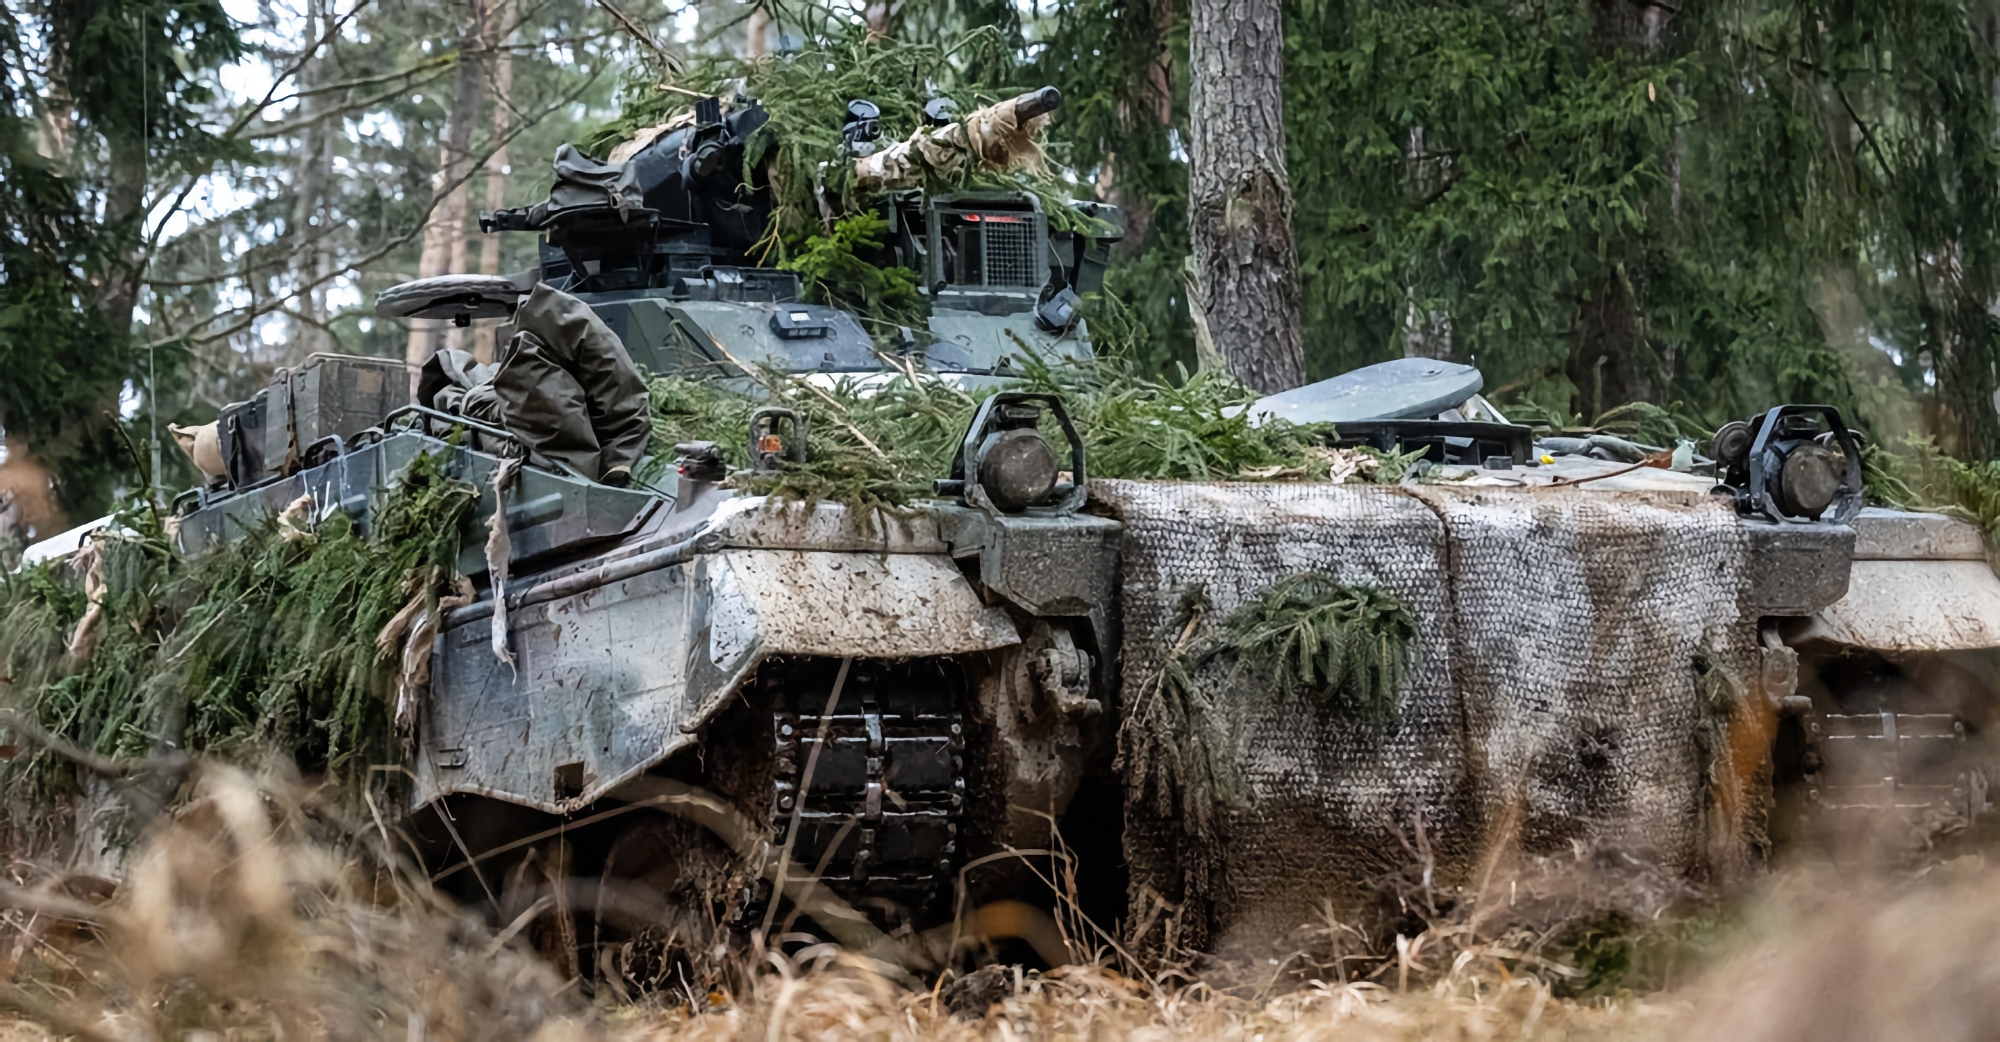 Tyskland vil kun overføre 120 Marder 1A3 infanterikampkøretøjer til Ukraine, hvoraf nogle allerede er i AFU's besiddelse.